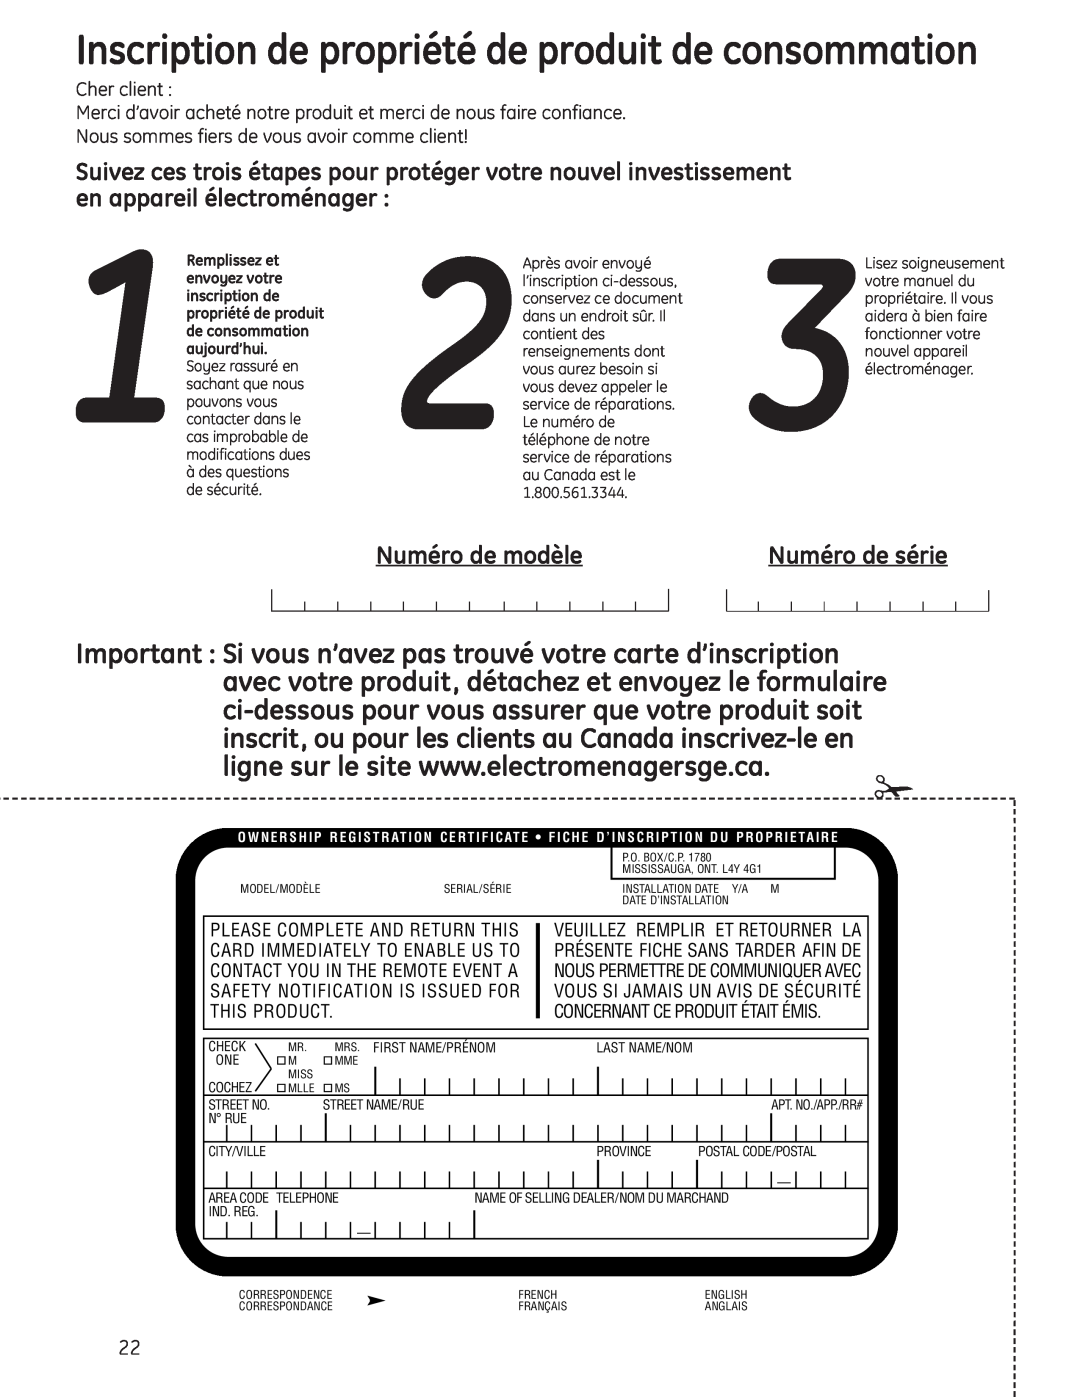 GE Stainless Steel Tub Dishwasher manual Numéro de modèle, Numéro de série, Cher client 